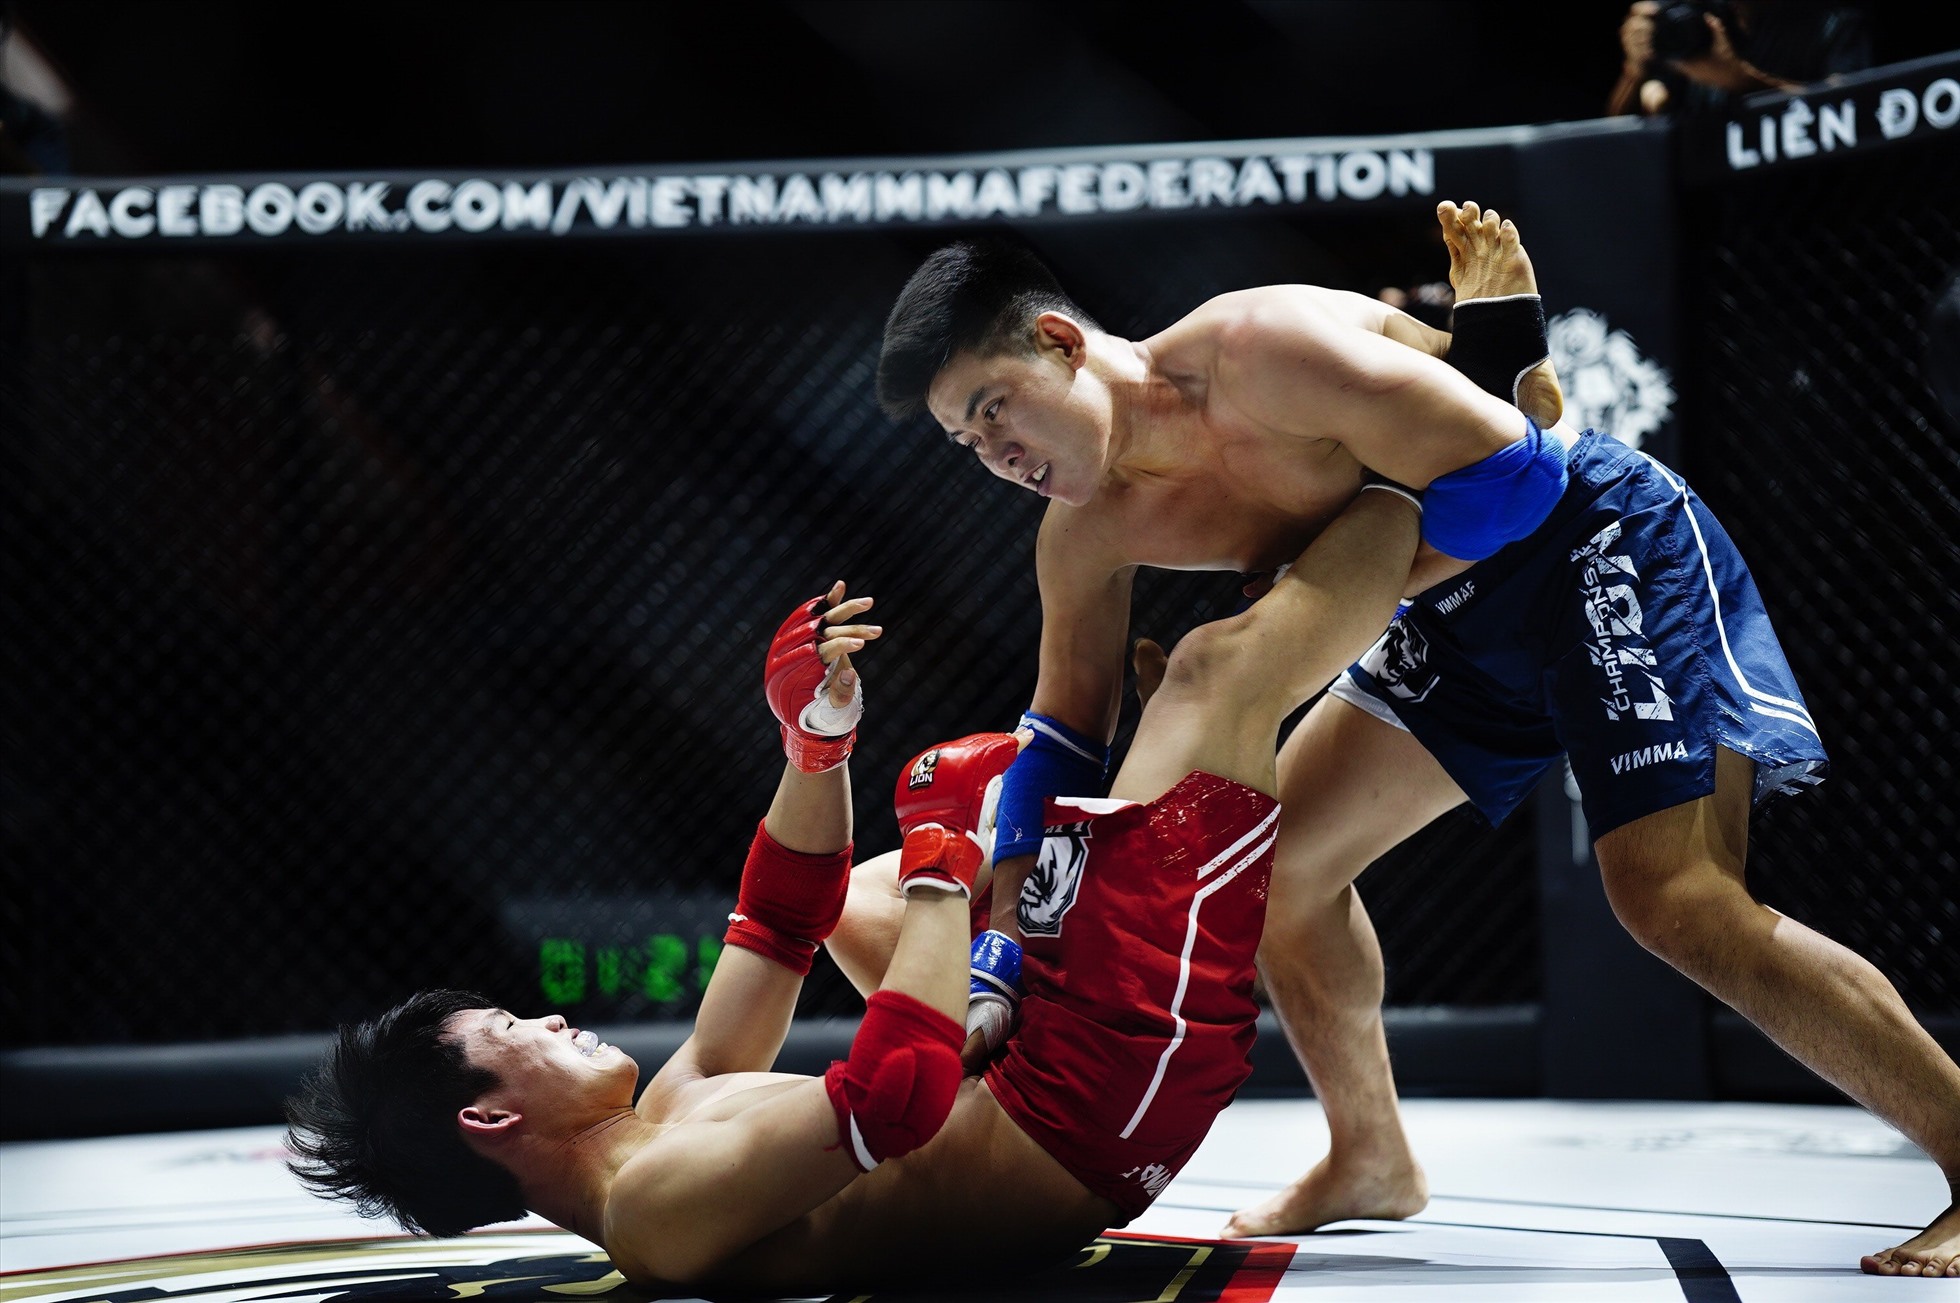 Ở hạng cân 84kg nam, Trần Quốc Toản ( xanh) thắng Phạm Hùng Hải (đỏ) bằng knock-out kĩ thuật (ground and pound) sau 2 phút 39 giây ngay hiệp 1.